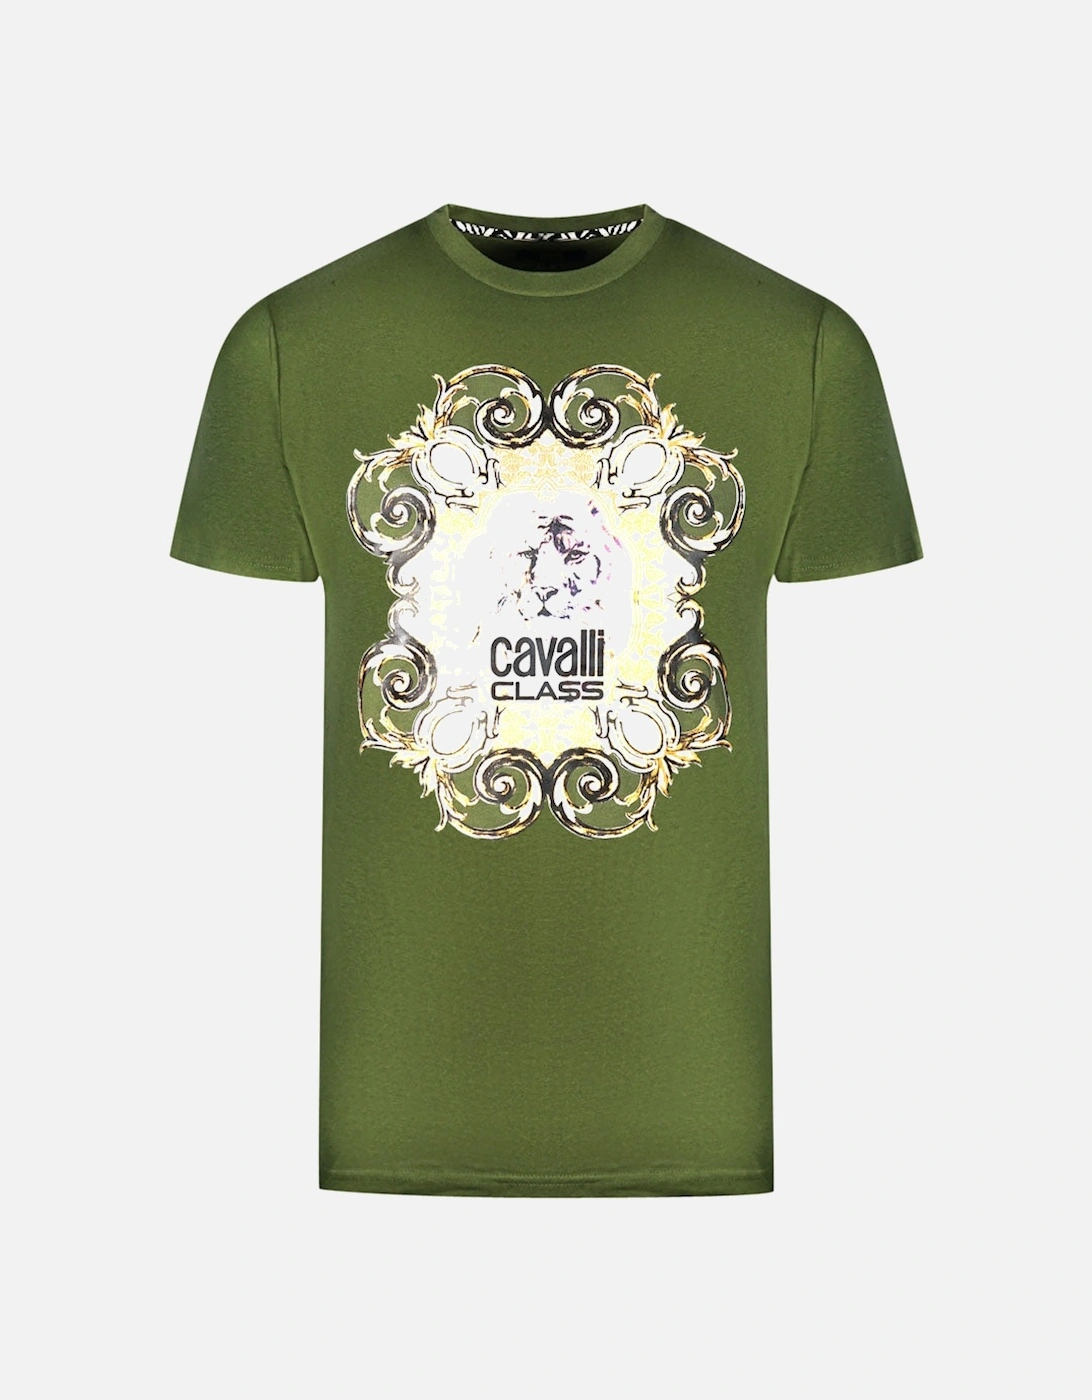 Cavalli Class Bold Tiger Emblem Design Green T-Shirt, 3 of 2